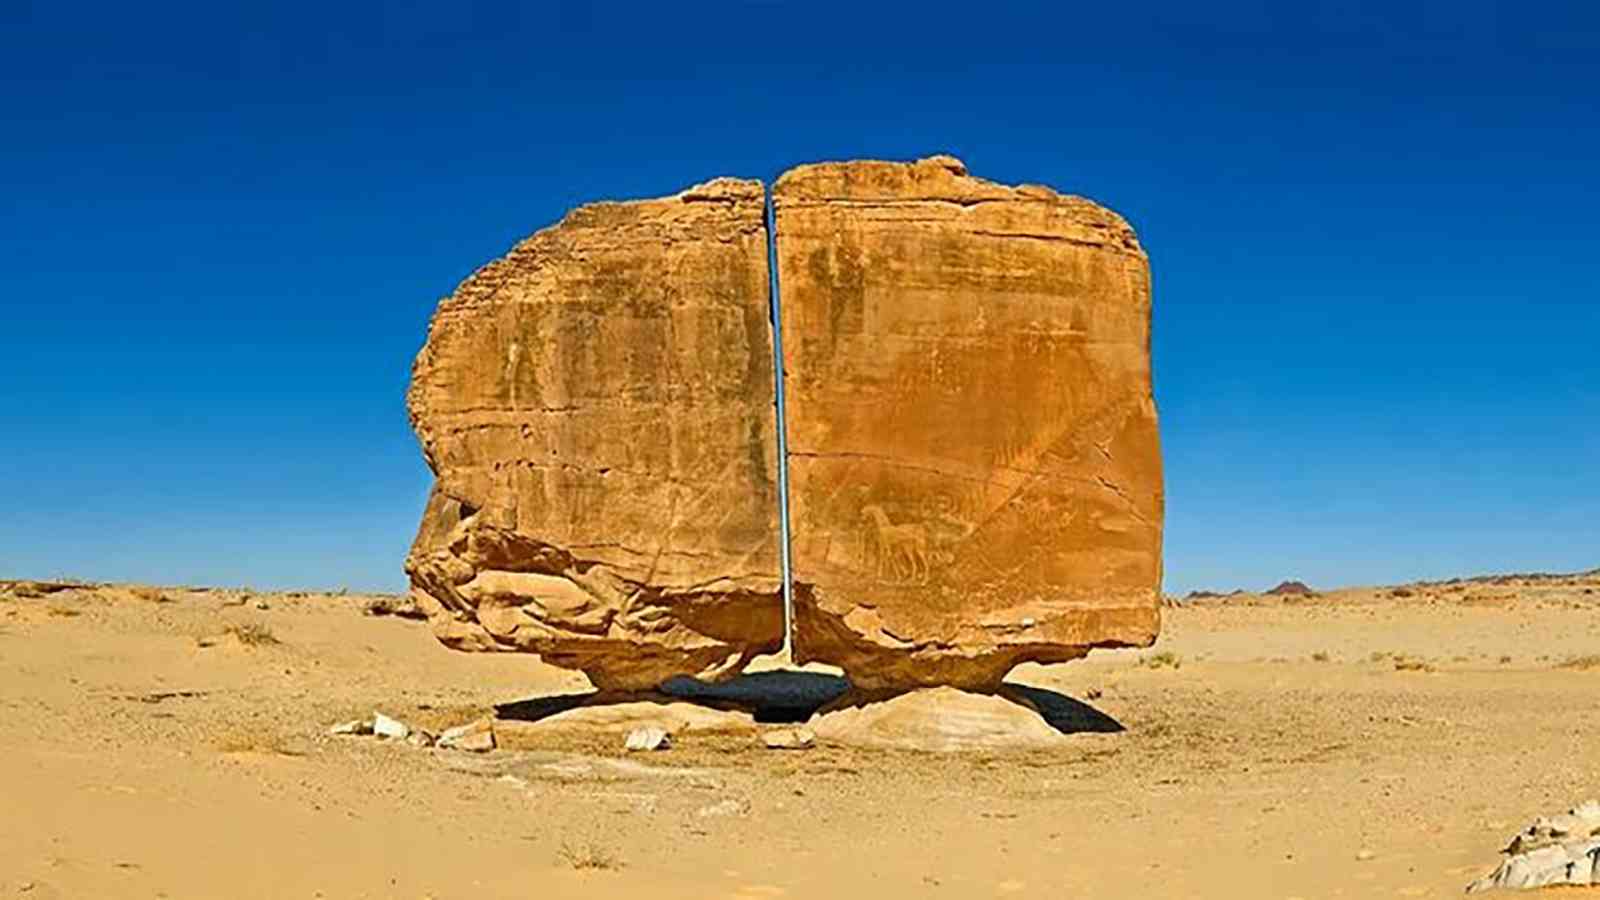 صورة الصخرة الضخمة المقطوعة في السعودية تحدث “جلبة” على الإنترنت